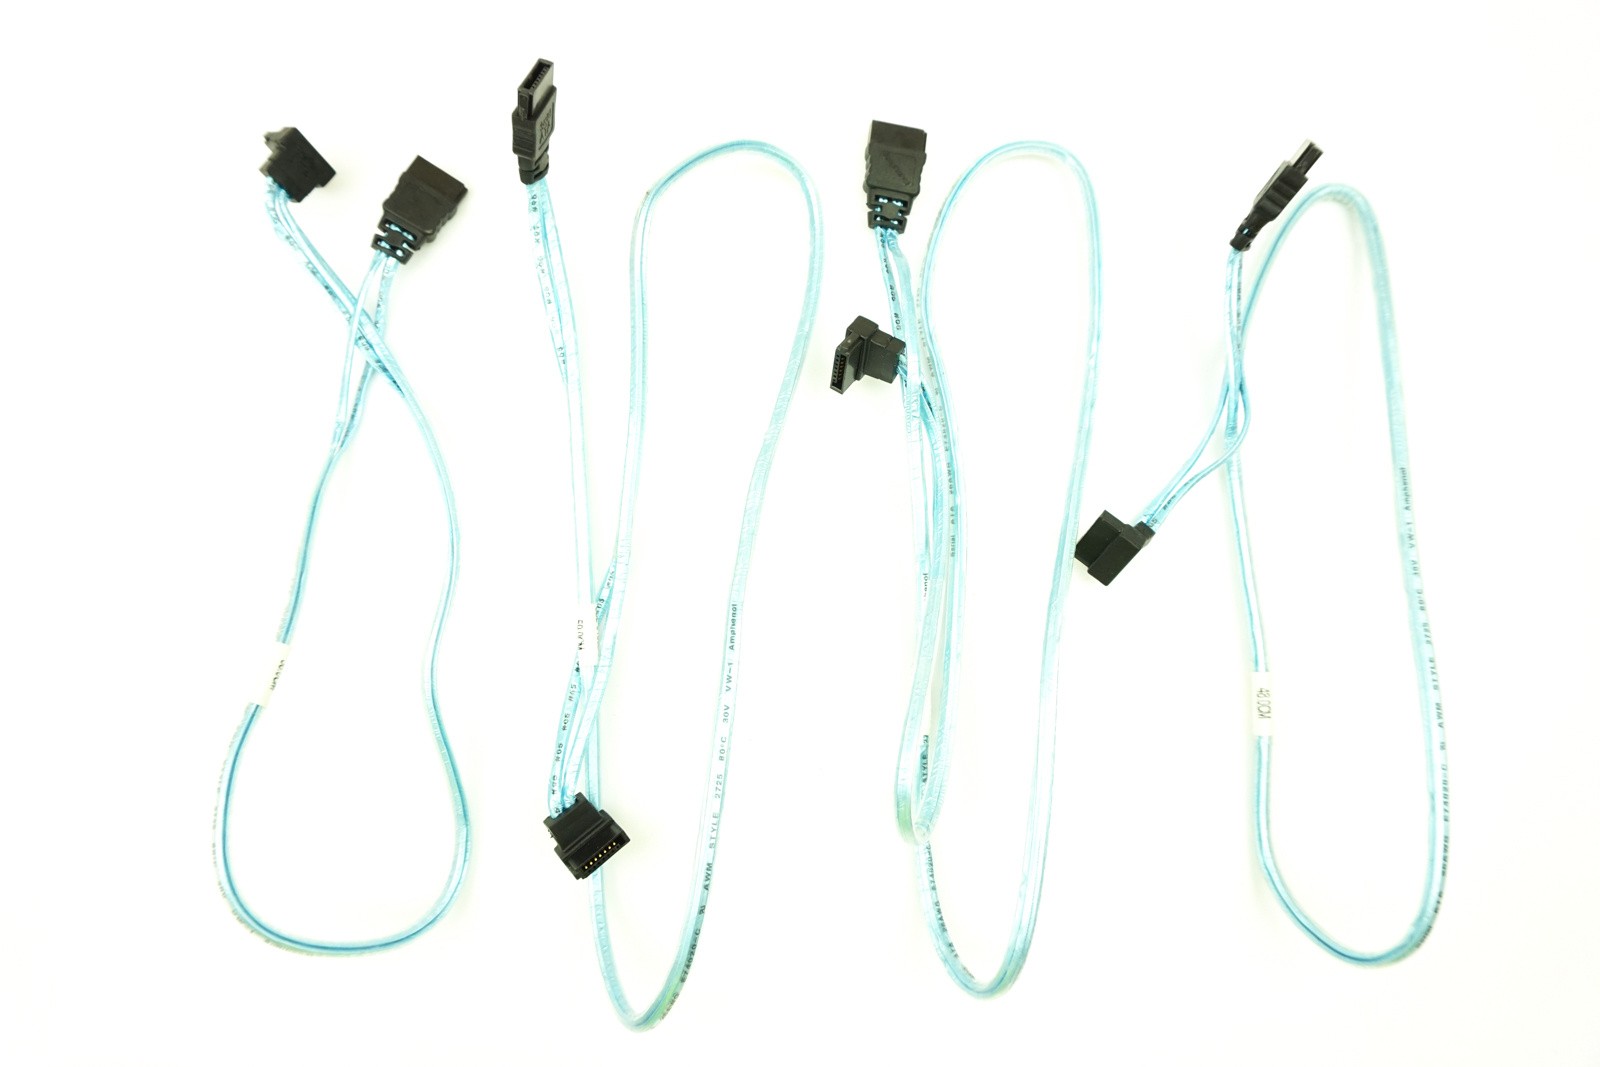 Supermicro 4x SATA Cable Kit 28", 23.5", 19", 15"